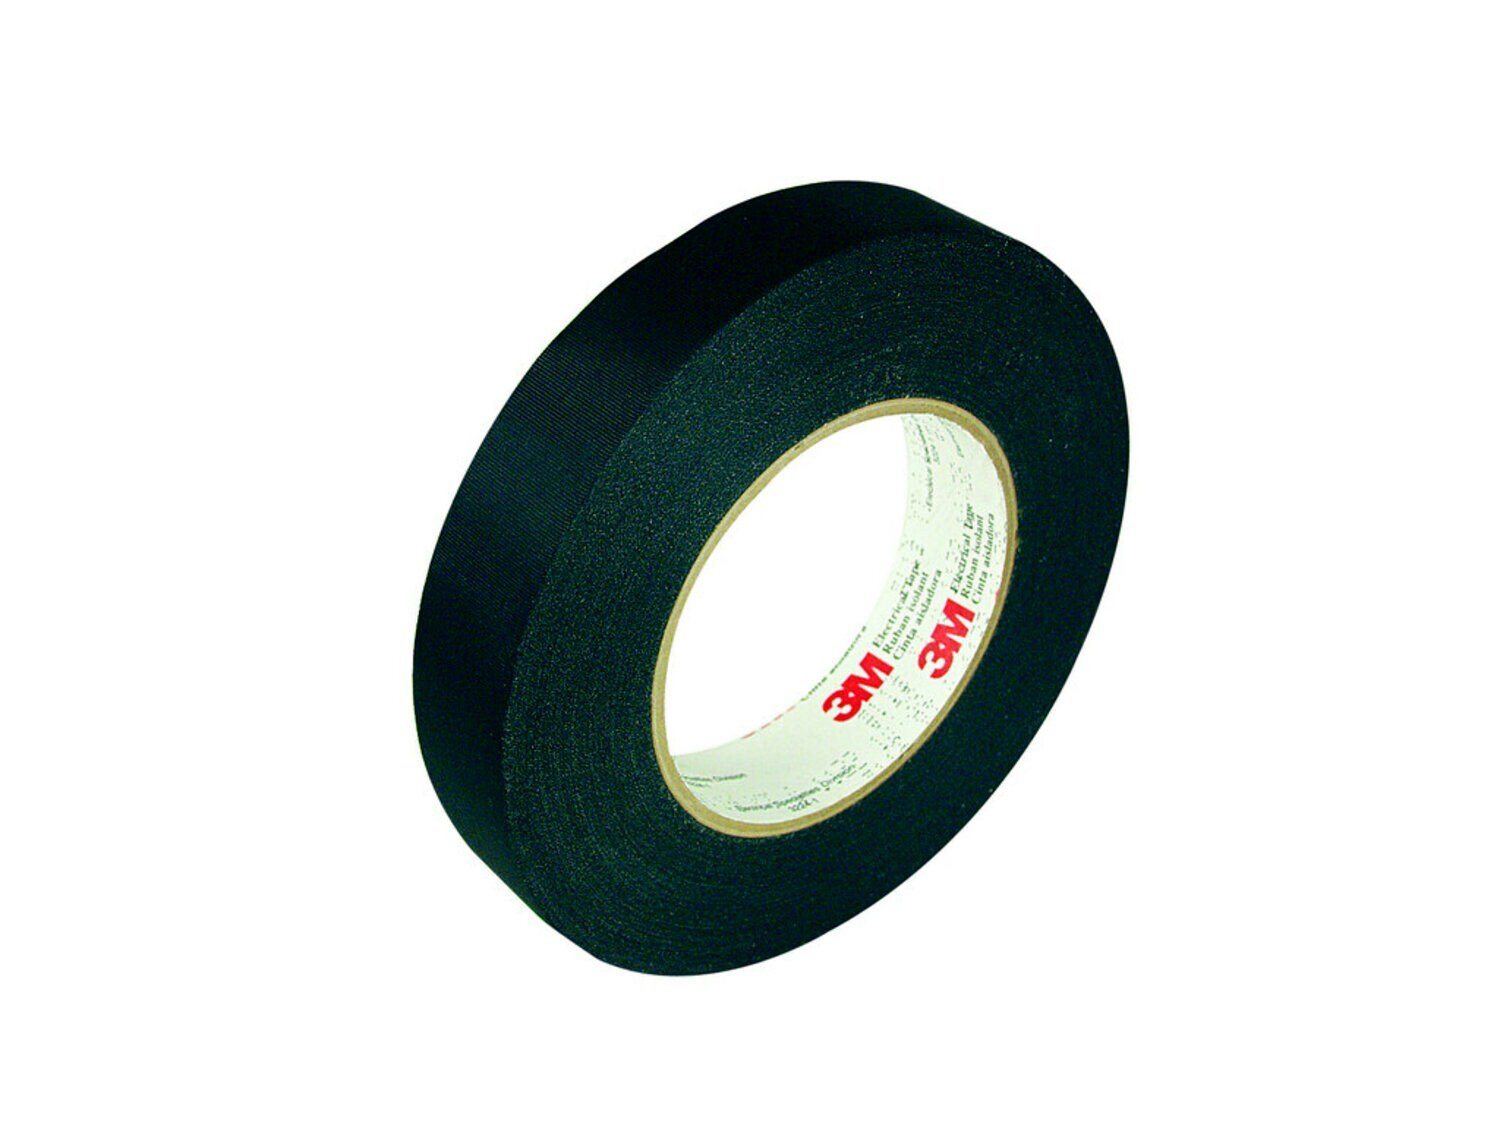 7000058613 - 3M Acetate Cloth Tape 11, 23-3/4 in x 72 yd, 3 in Paper Core, Log Roll,
Black, 1 Roll/Case